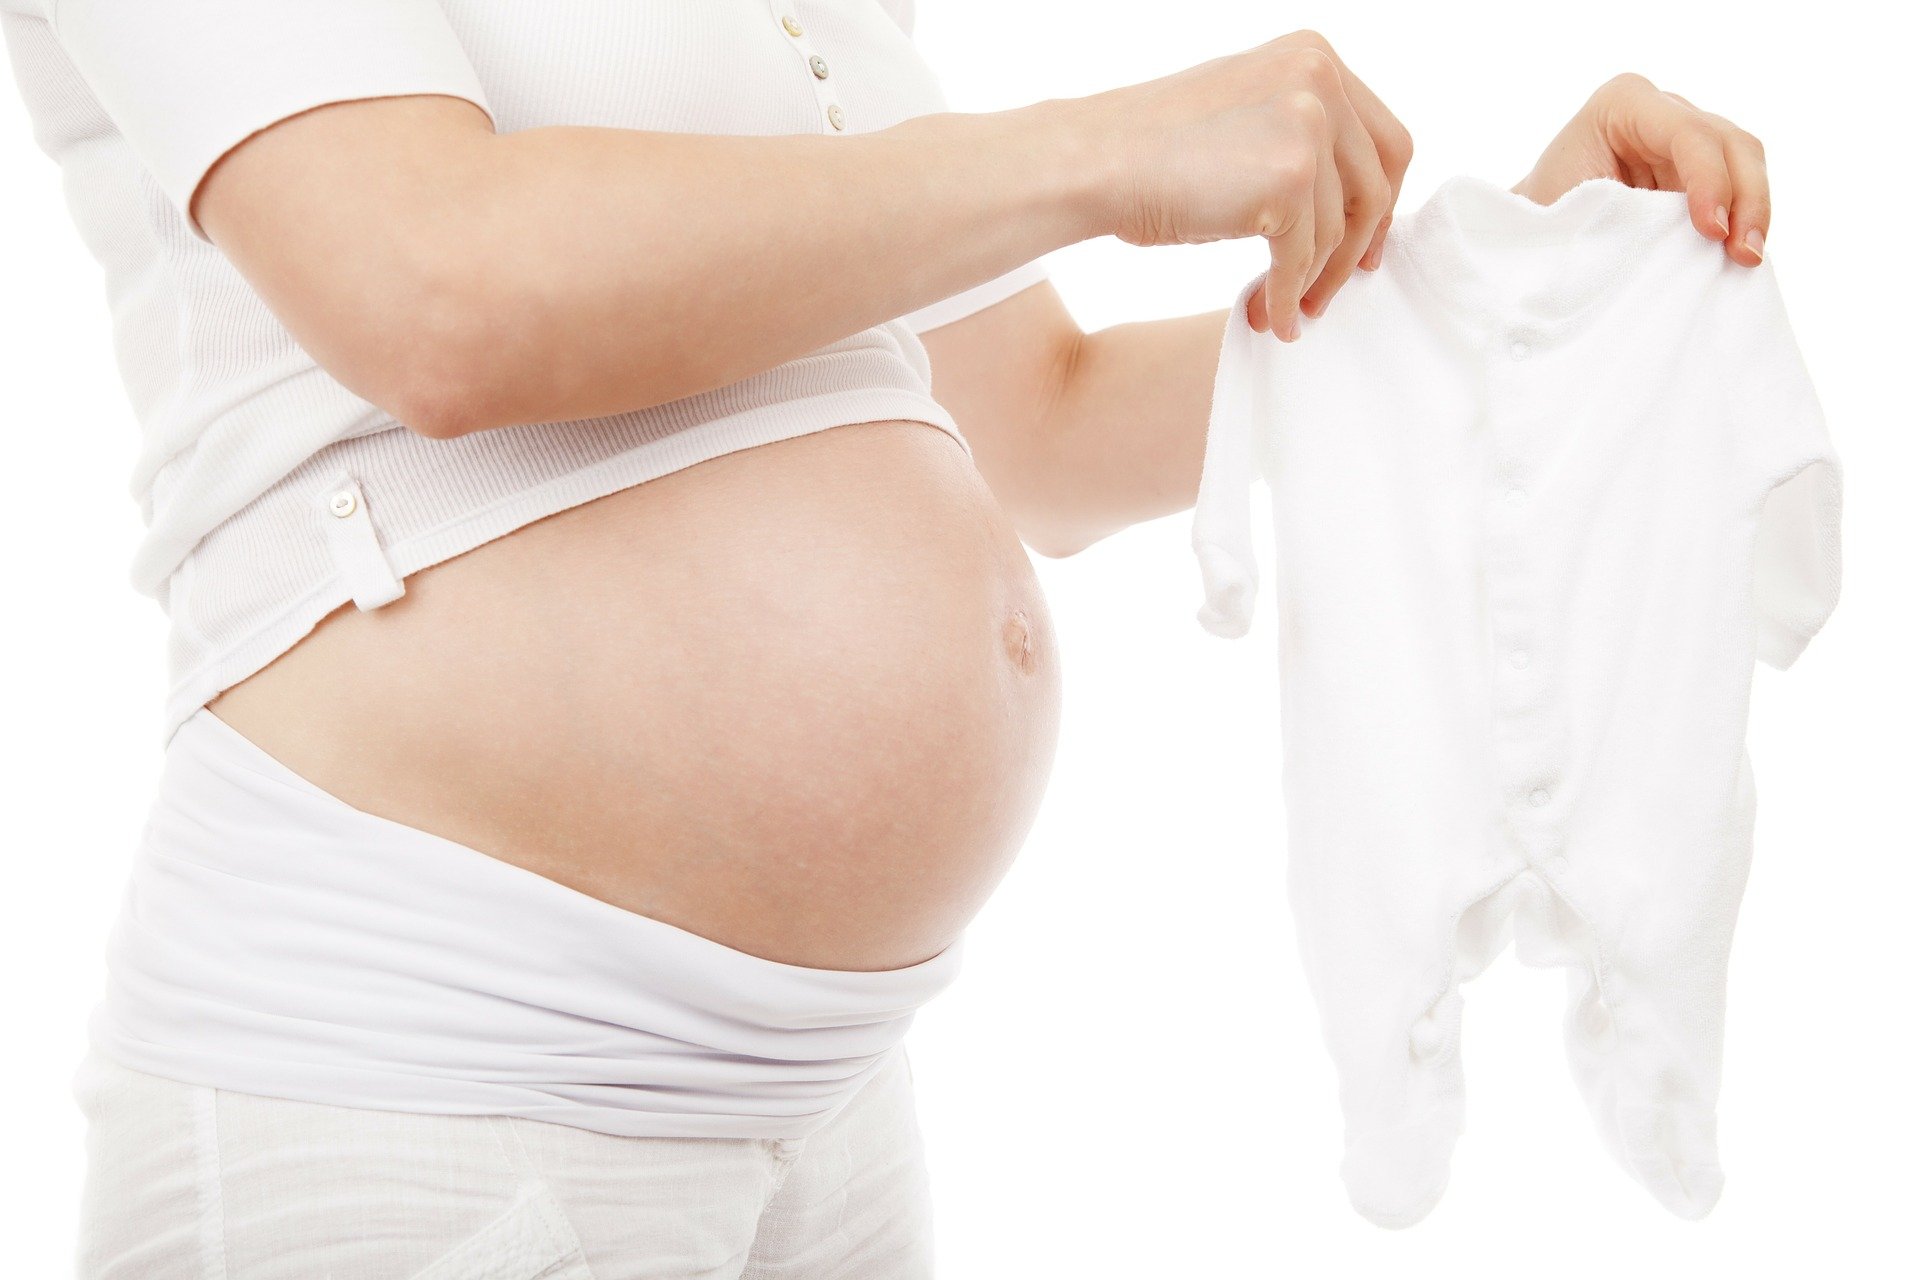 24 tydzień ciąży,planowanie ciąży, mama, tata, brzuszek, licencja CC-BY-SA-4